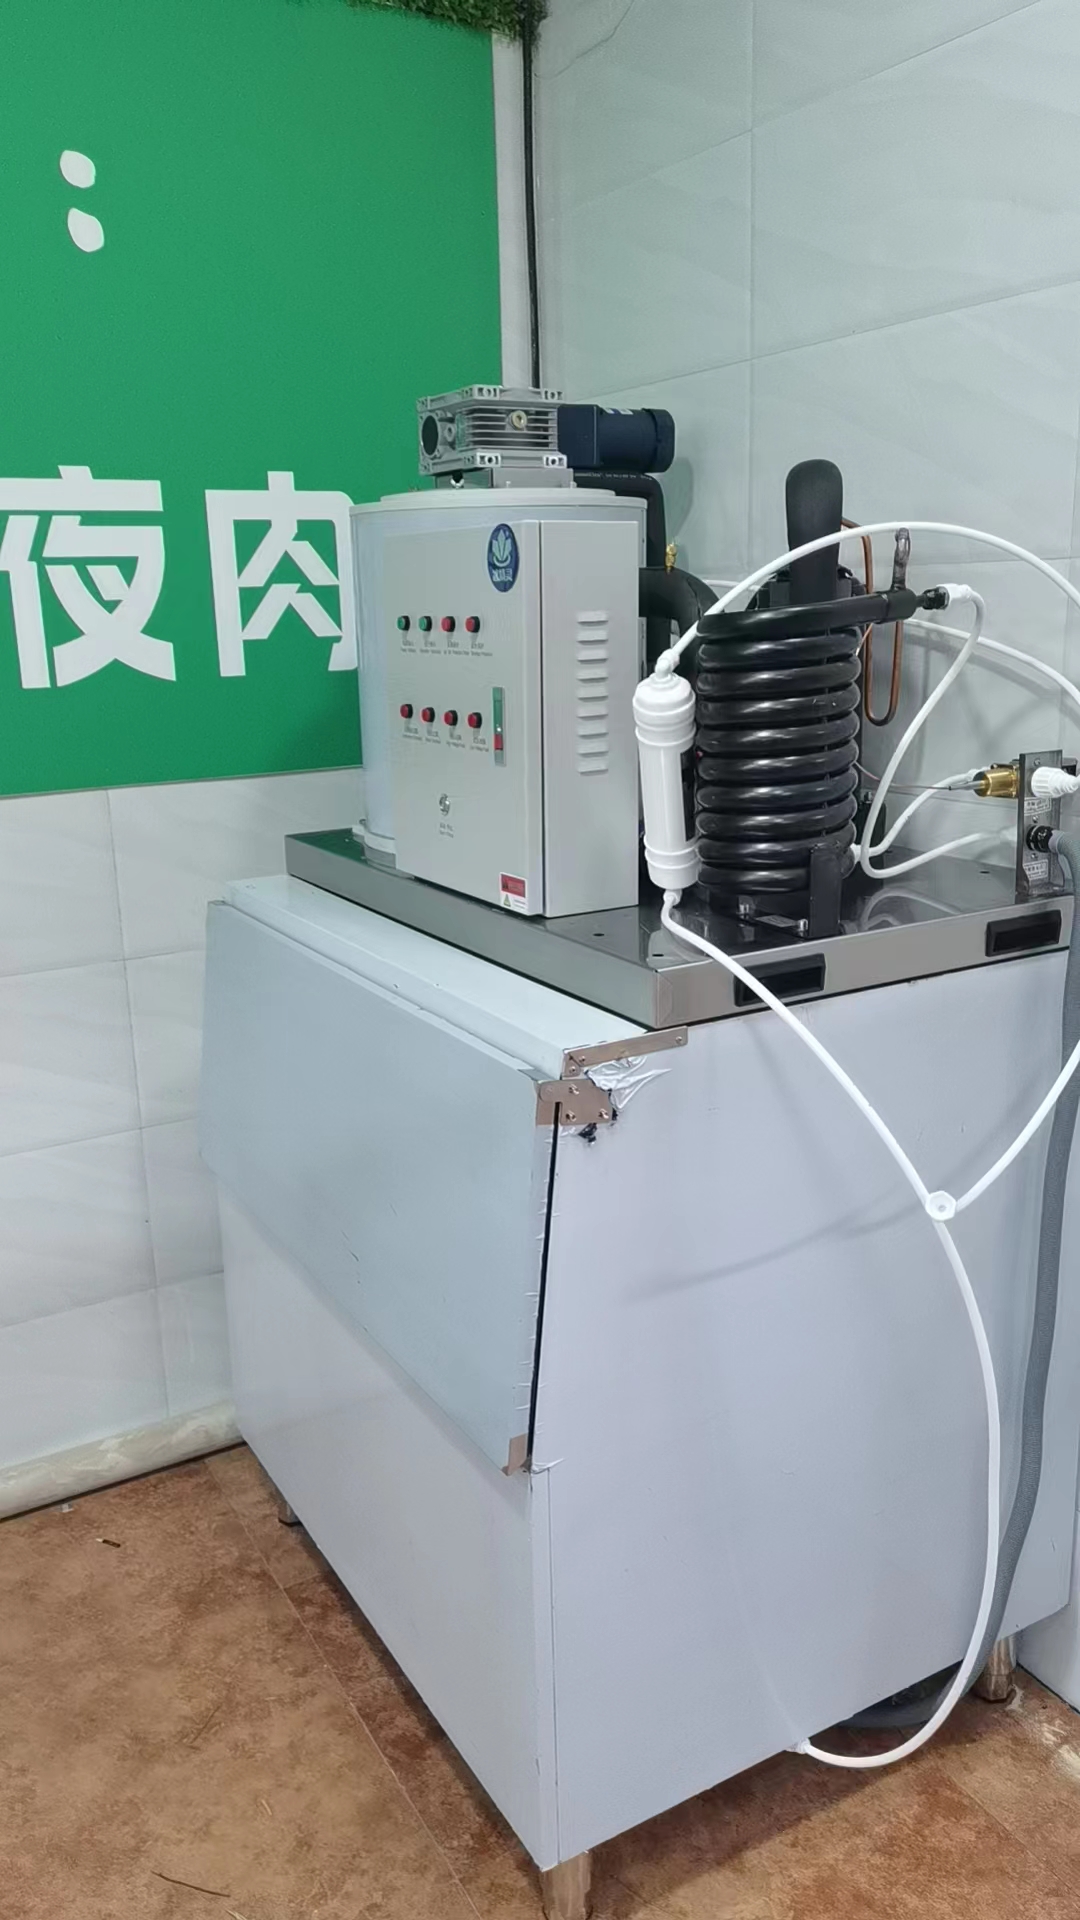 500公斤片冰机已交付安徽省泗县《易客隆超市》